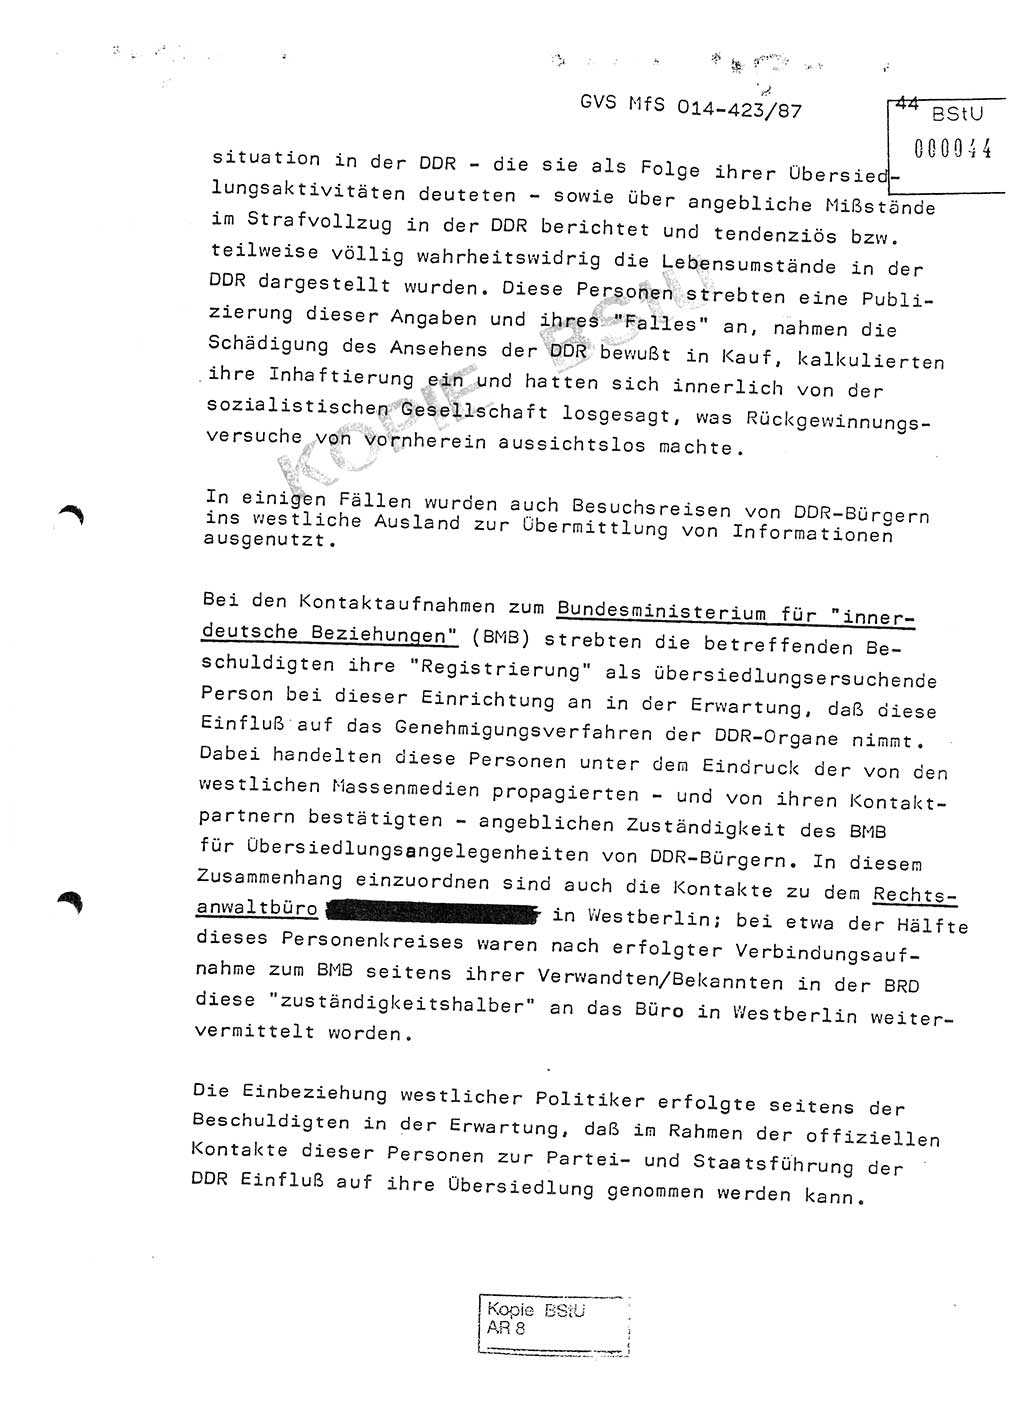 Jahresbericht der Hauptabteilung (HA) Ⅸ 1986, Einschätzung der Wirksamkeit der Untersuchungsarbeit im Jahre 1986, Ministerium für Staatssicherheit (MfS) der Deutschen Demokratischen Republik (DDR), Hauptabteilung Ⅸ, Geheime Verschlußsache (GVS) o014-423/87, Berlin 1987, Seite 44 (Einsch. MfS DDR HA Ⅸ GVS o014-423/87 1986, S. 44)